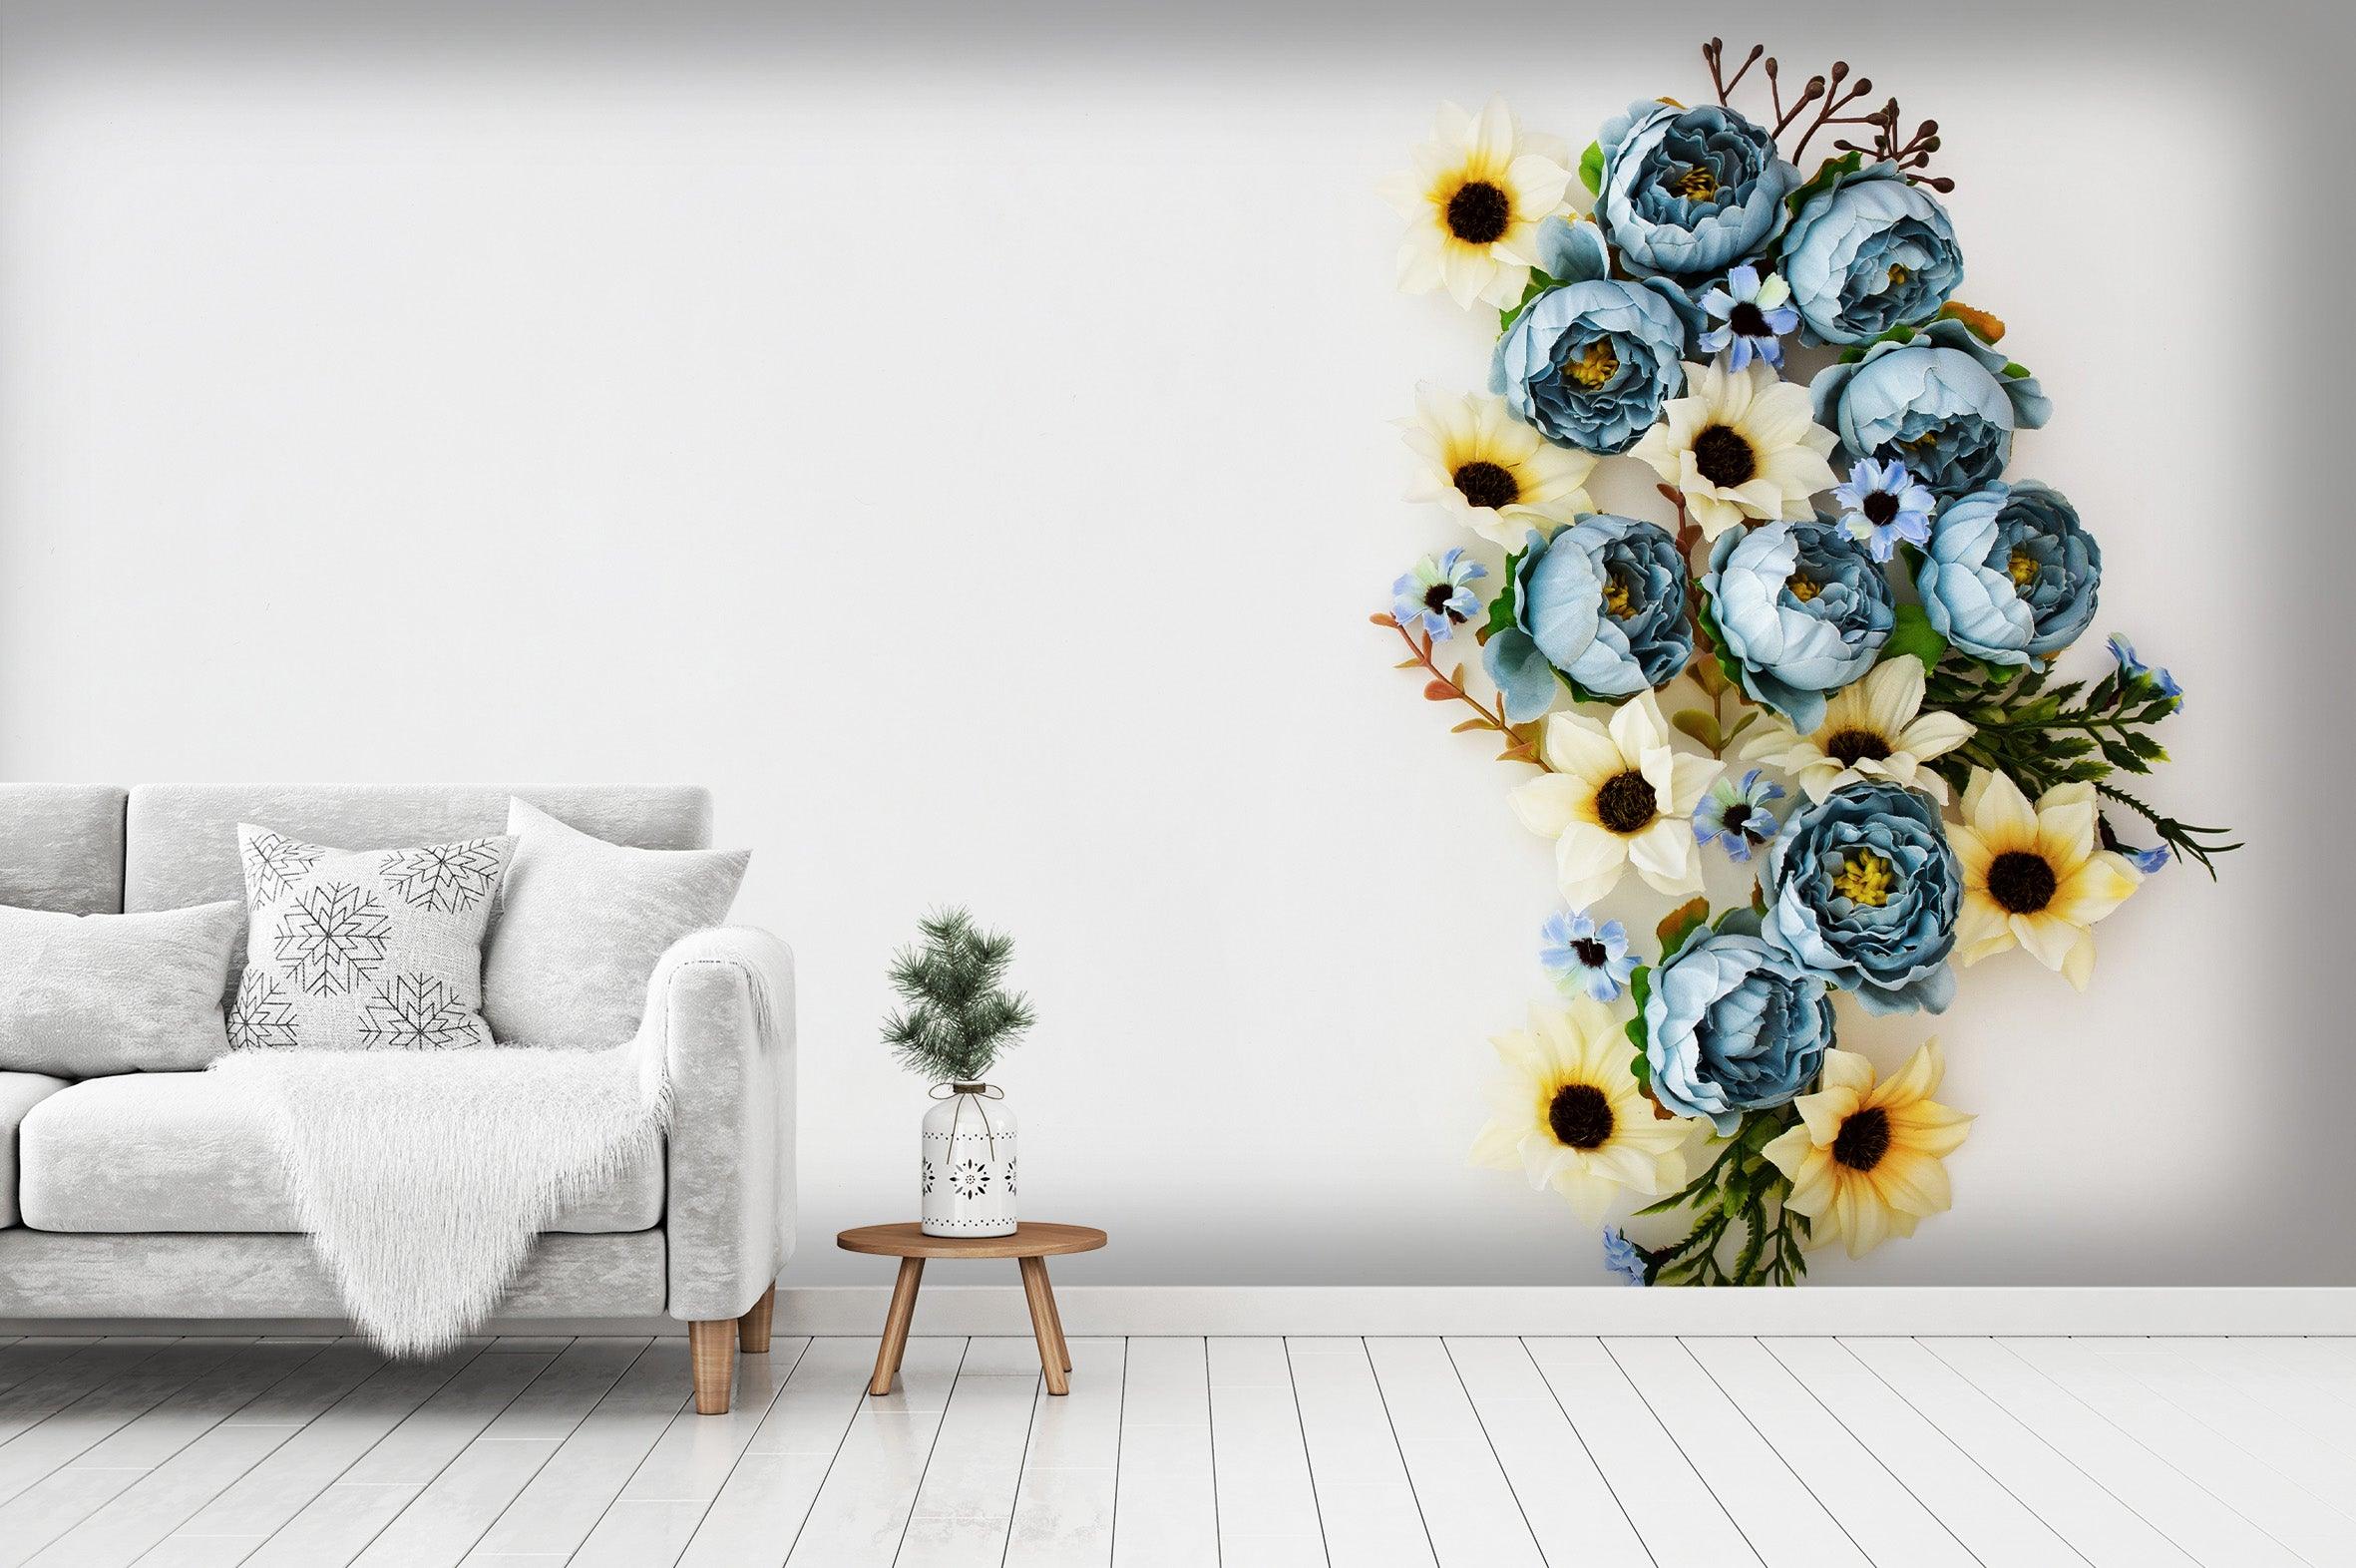 3D flower wall mural wallpaper 26- Jess Art Decoration